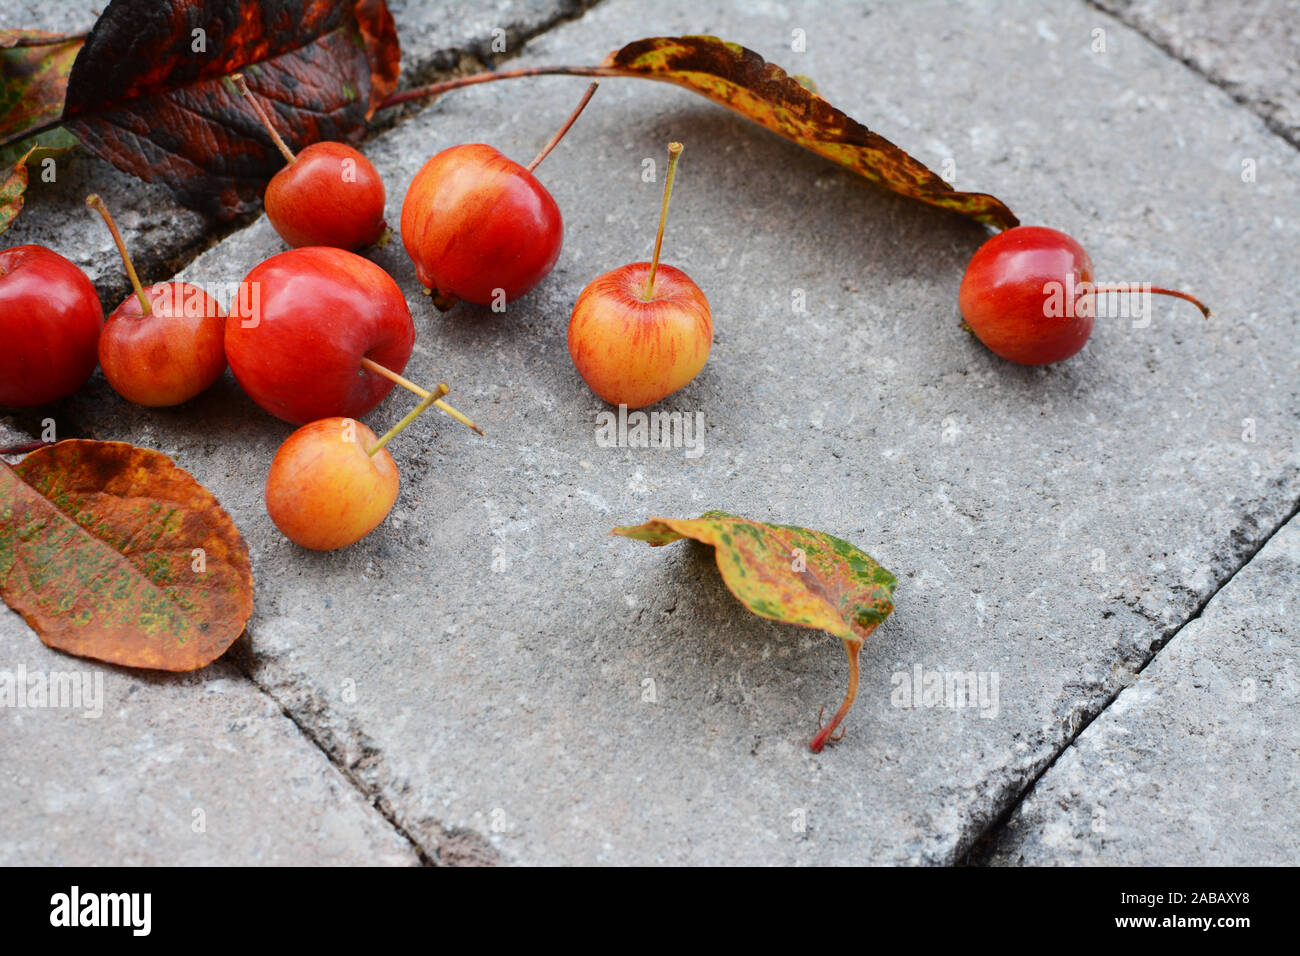 Les pommes du crabe jaune et orange avec feuillage d'automne sur un sentier en pierre en automne Banque D'Images